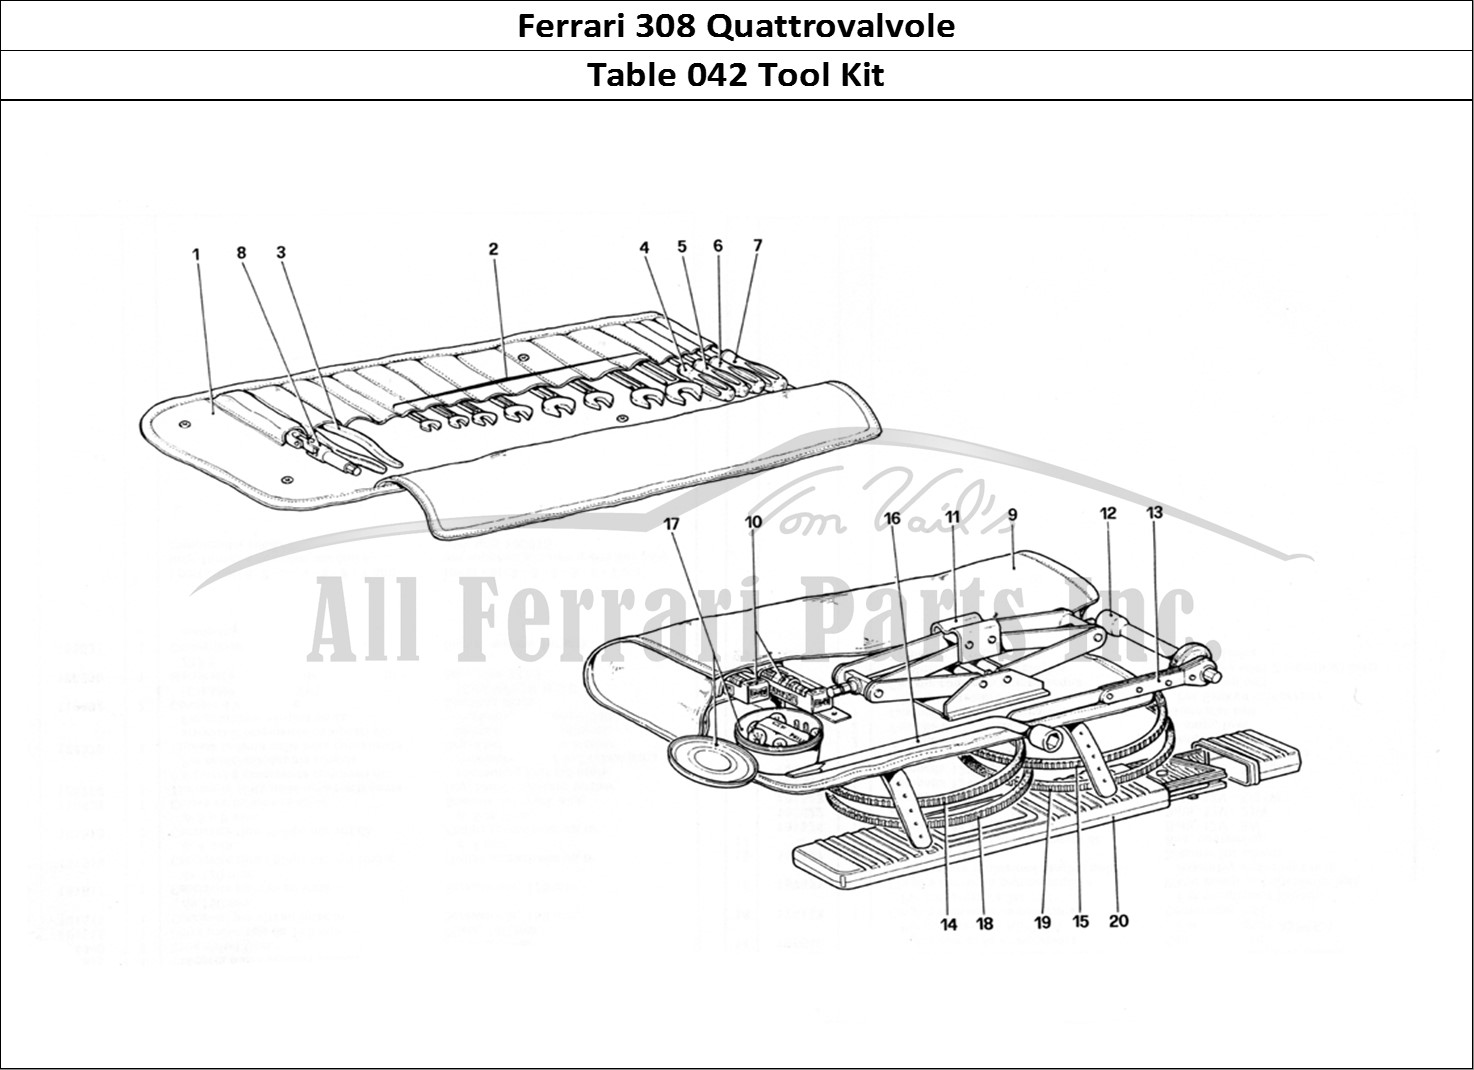 Ferrari Parts Ferrari 308 Quattrovalvole (1985) Page 042 Tool Kit